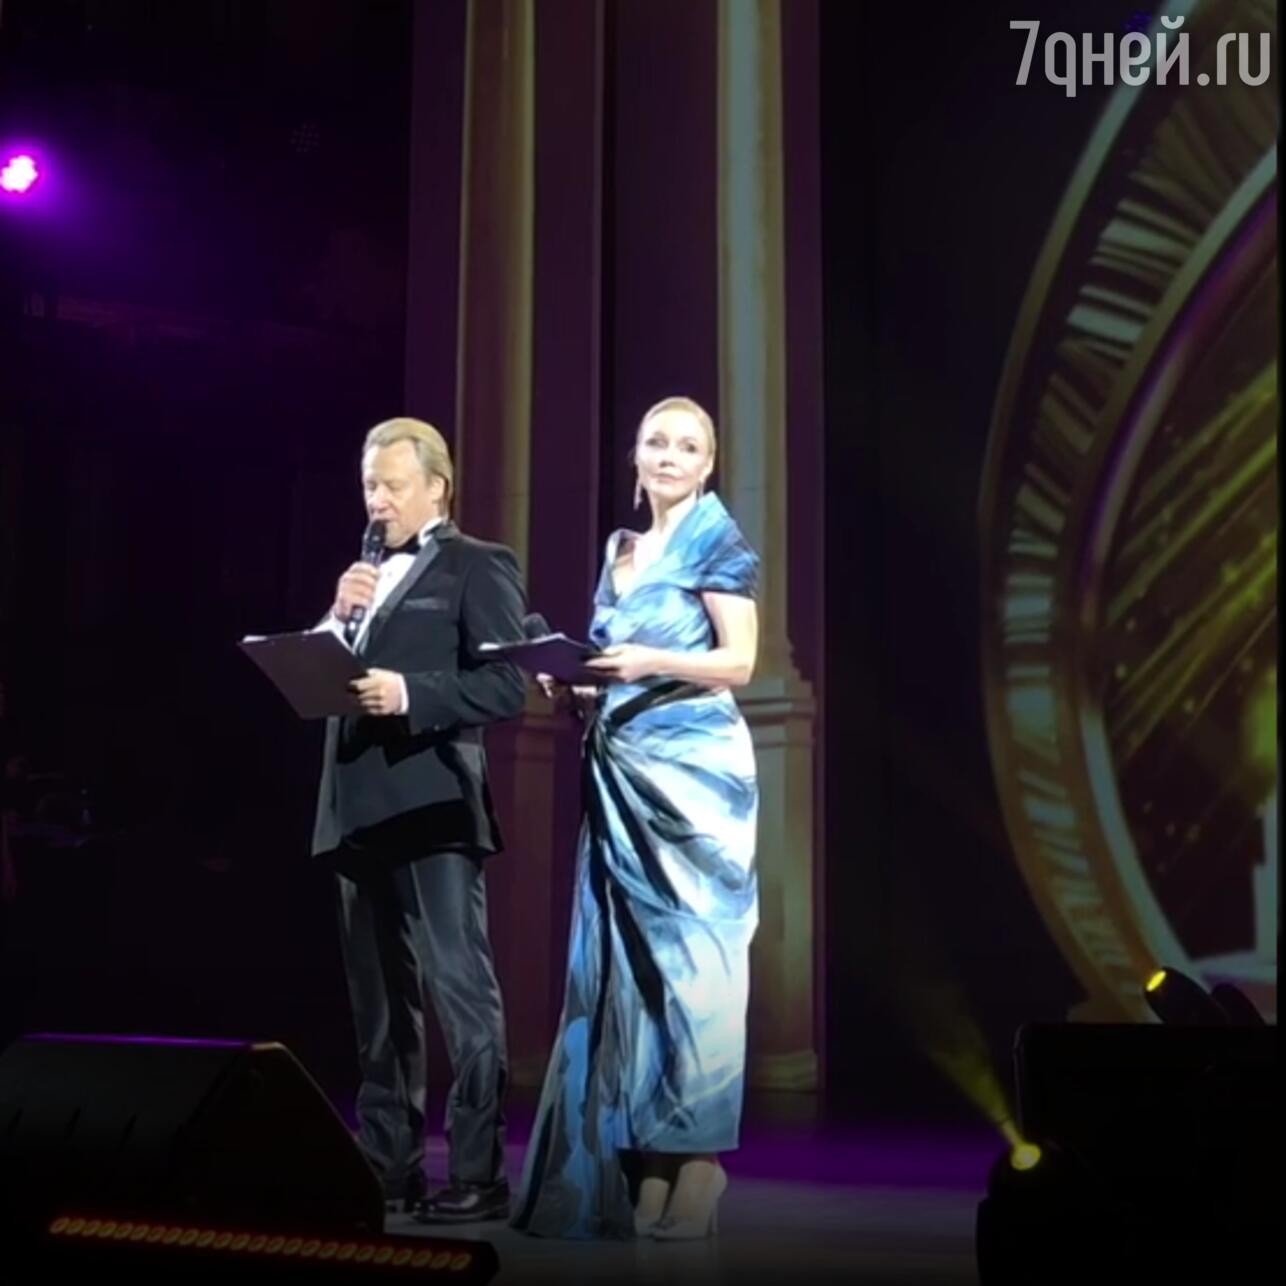 Марина Зудина и Дмитрий Харатьян на закрытии X Забайкальского кинофестиваля